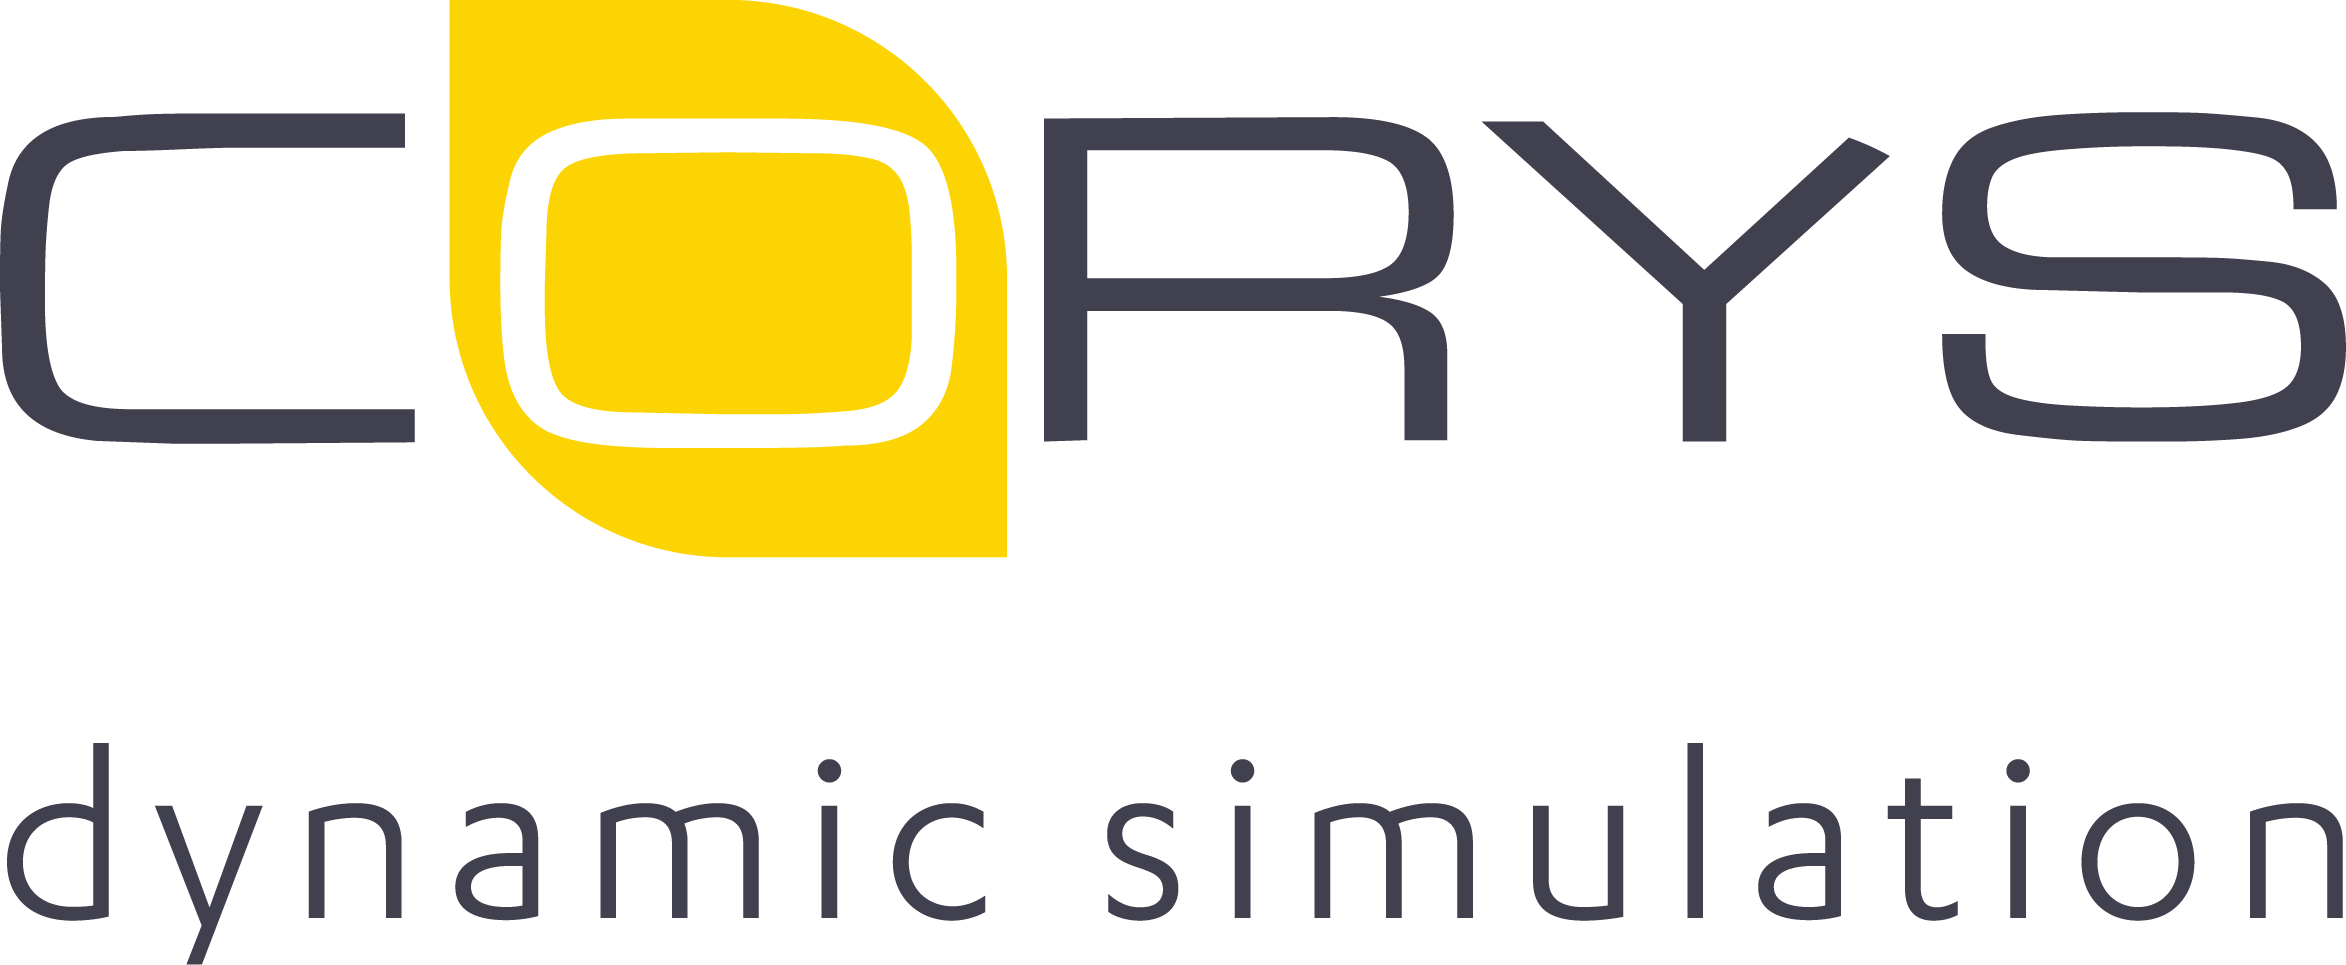 corys dynamic simulation dark